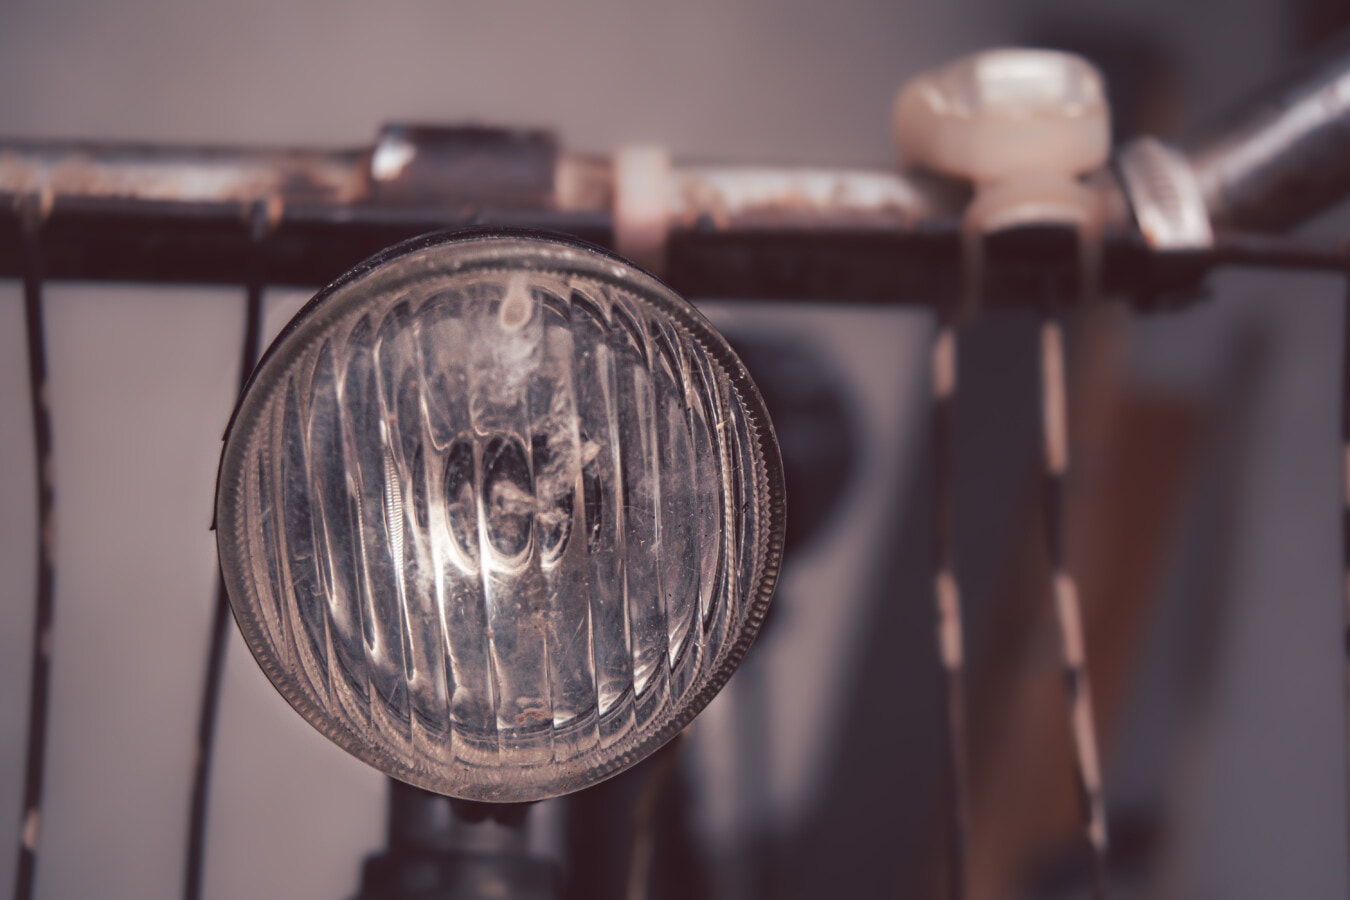 xe đạp, cũ, cổ điển, đèn pha, Ban chỉ đạo wheel, đèn, đồ cổ, hoài niệm, thiết bị, cuộc hái nho